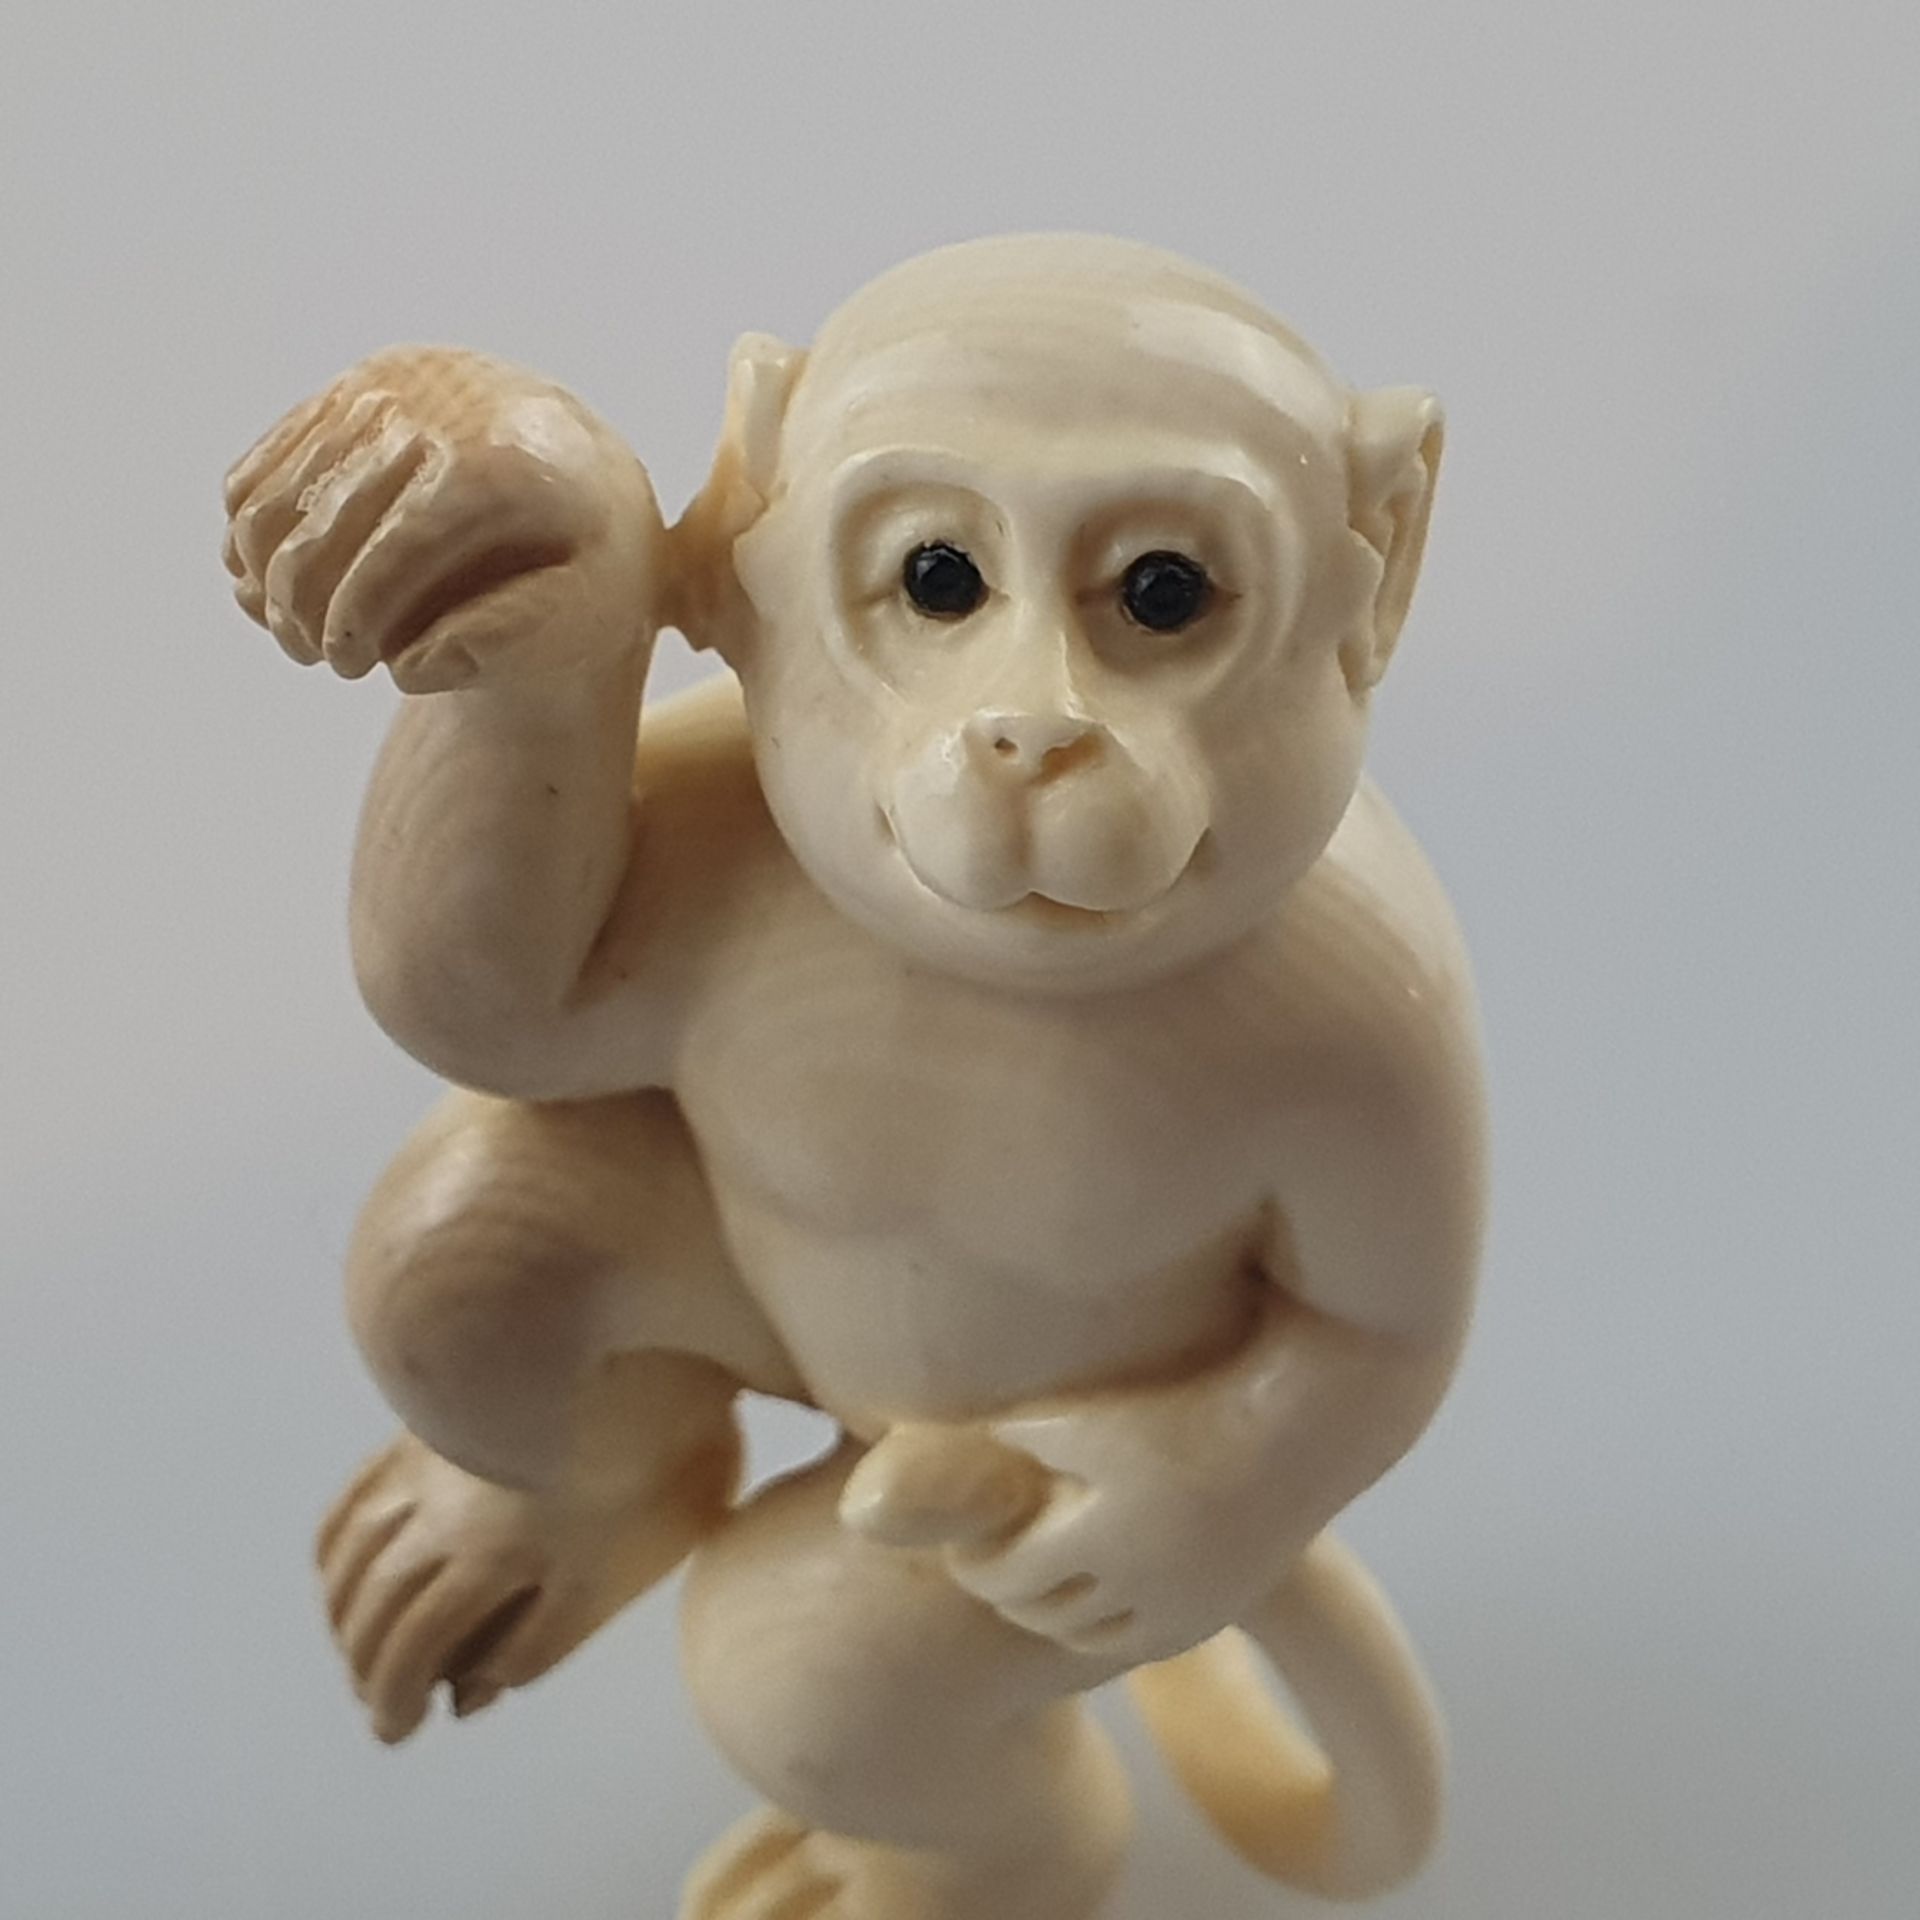 Katabori-Netsuke - Tanzender Affe, feine Elfenbein-Schnitzarbeit, dunkel eingelegte Augen, untersei - Bild 2 aus 6